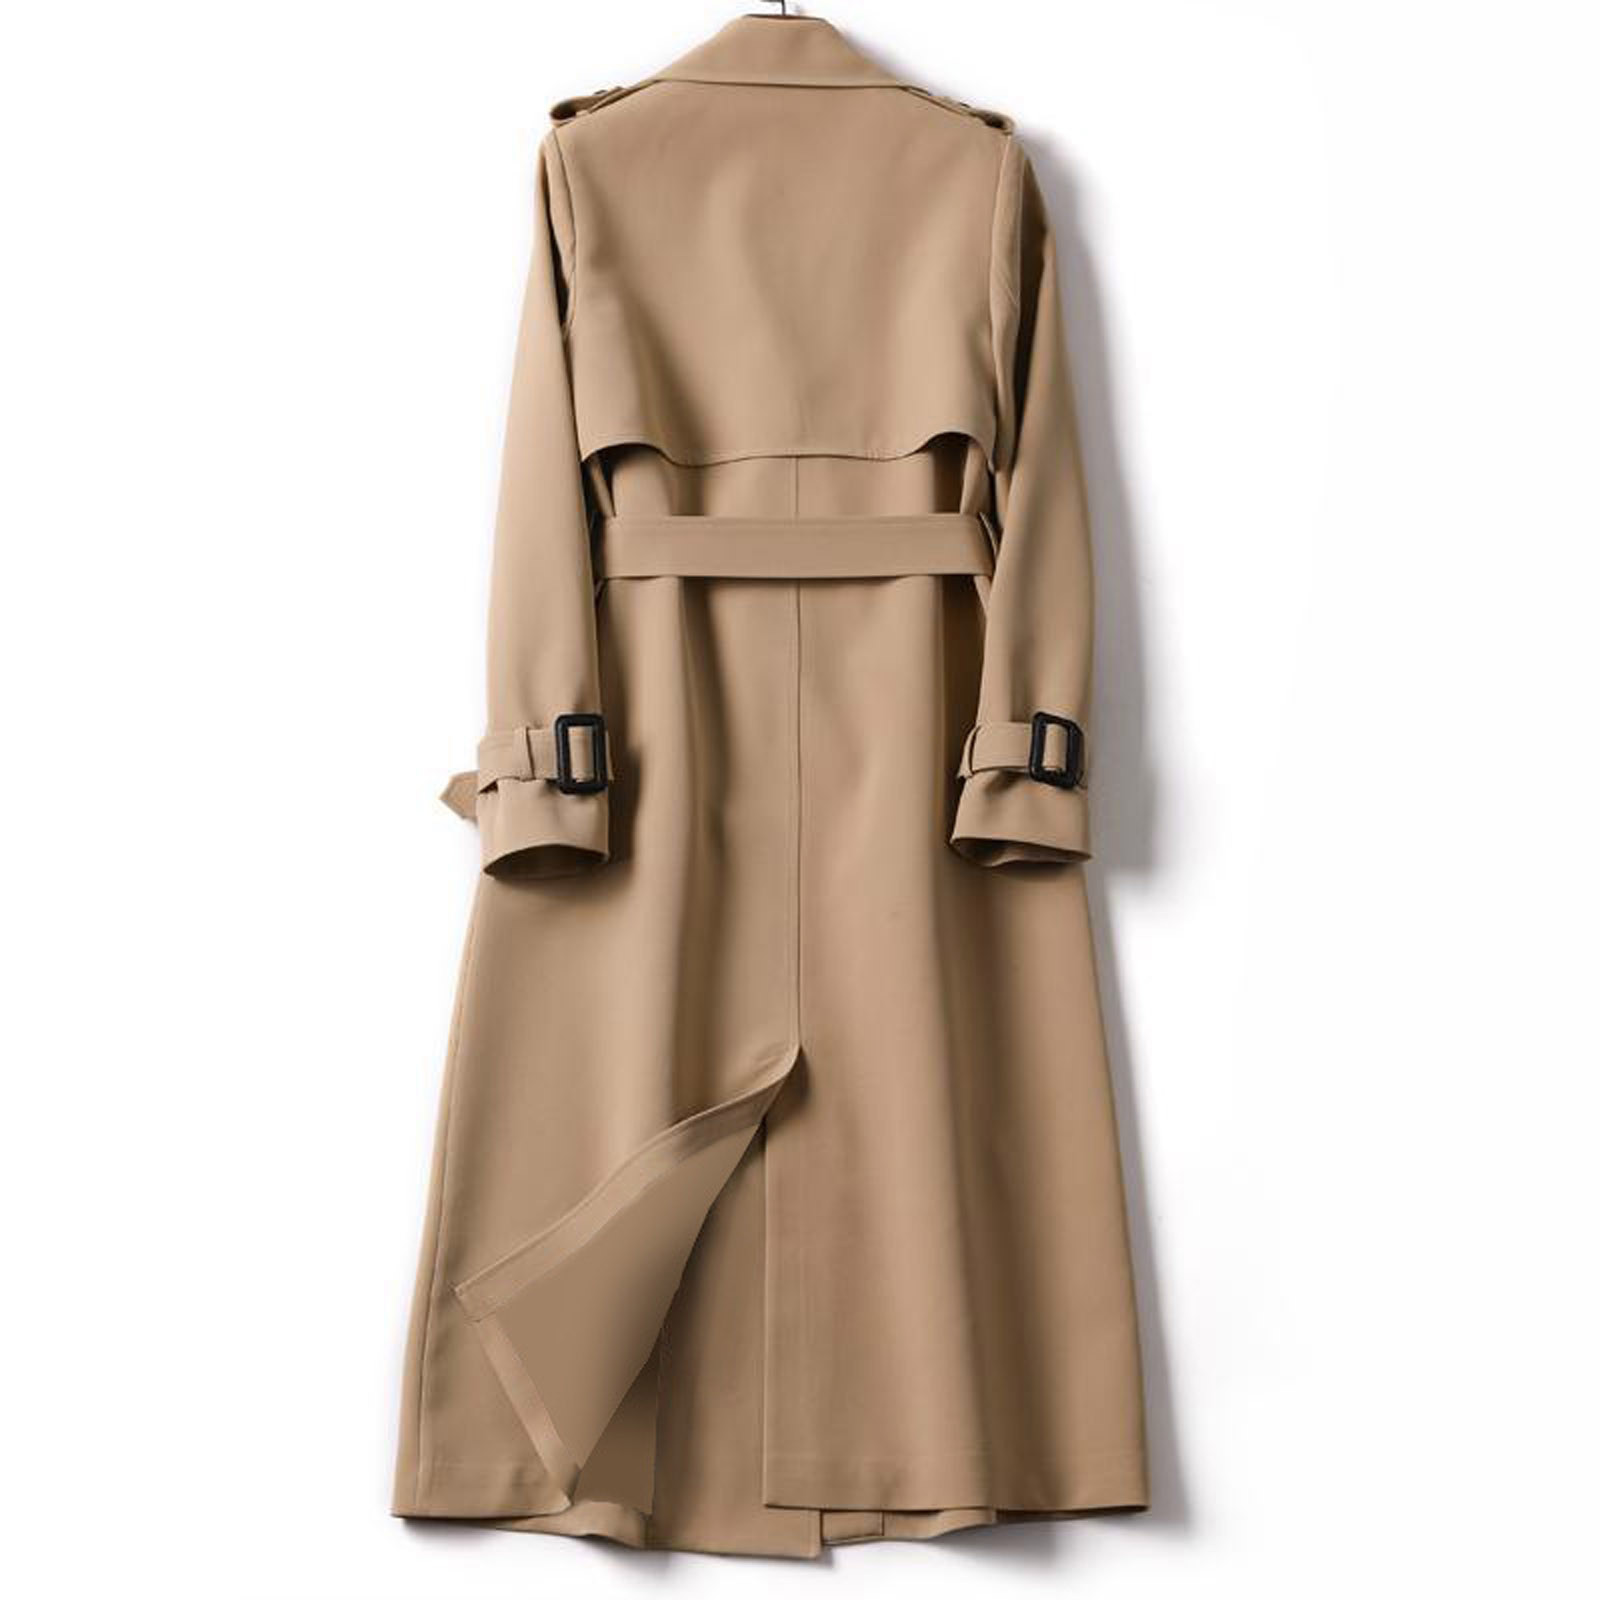 Mnycxen Women Overcoat Solid Slim Fit Coat Jacket Long Outerwear Windbreaker Trench - image 3 of 6